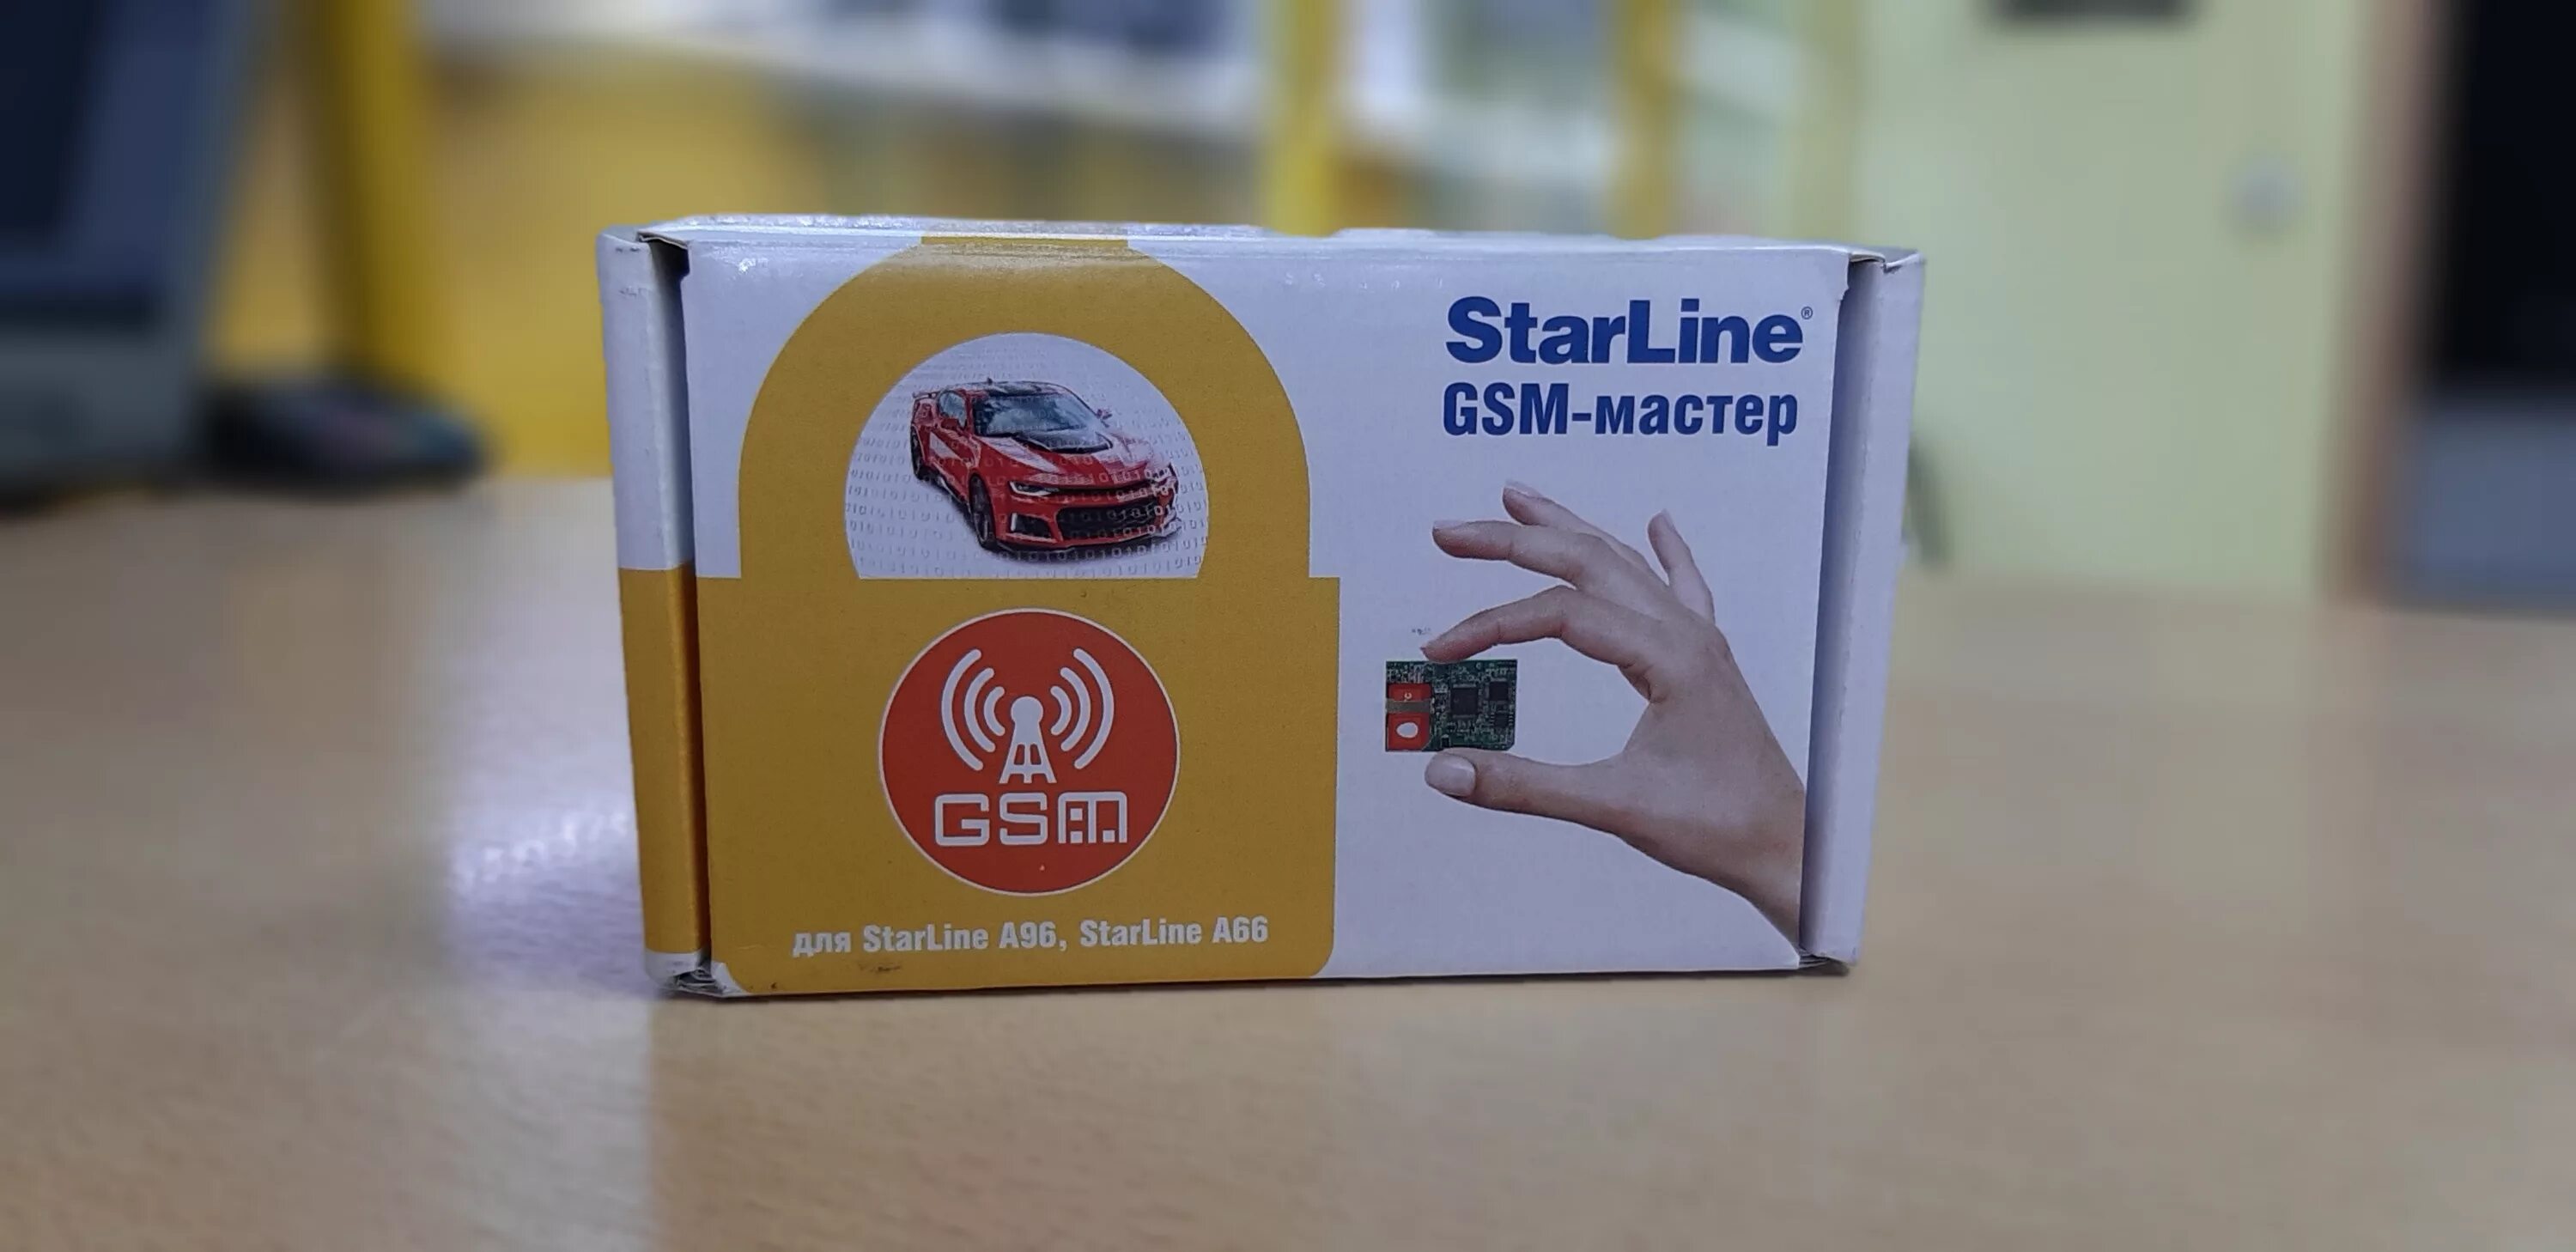 Мастер 6 gsm. GSM мастер 6 STARLINE. GSM модуль STARLINE 6 поколения. Модуль STARLINE GSM+GPS мастер-6. Модуль STARLINE GSM+GPS мастер-6 STARLINE 4003009.